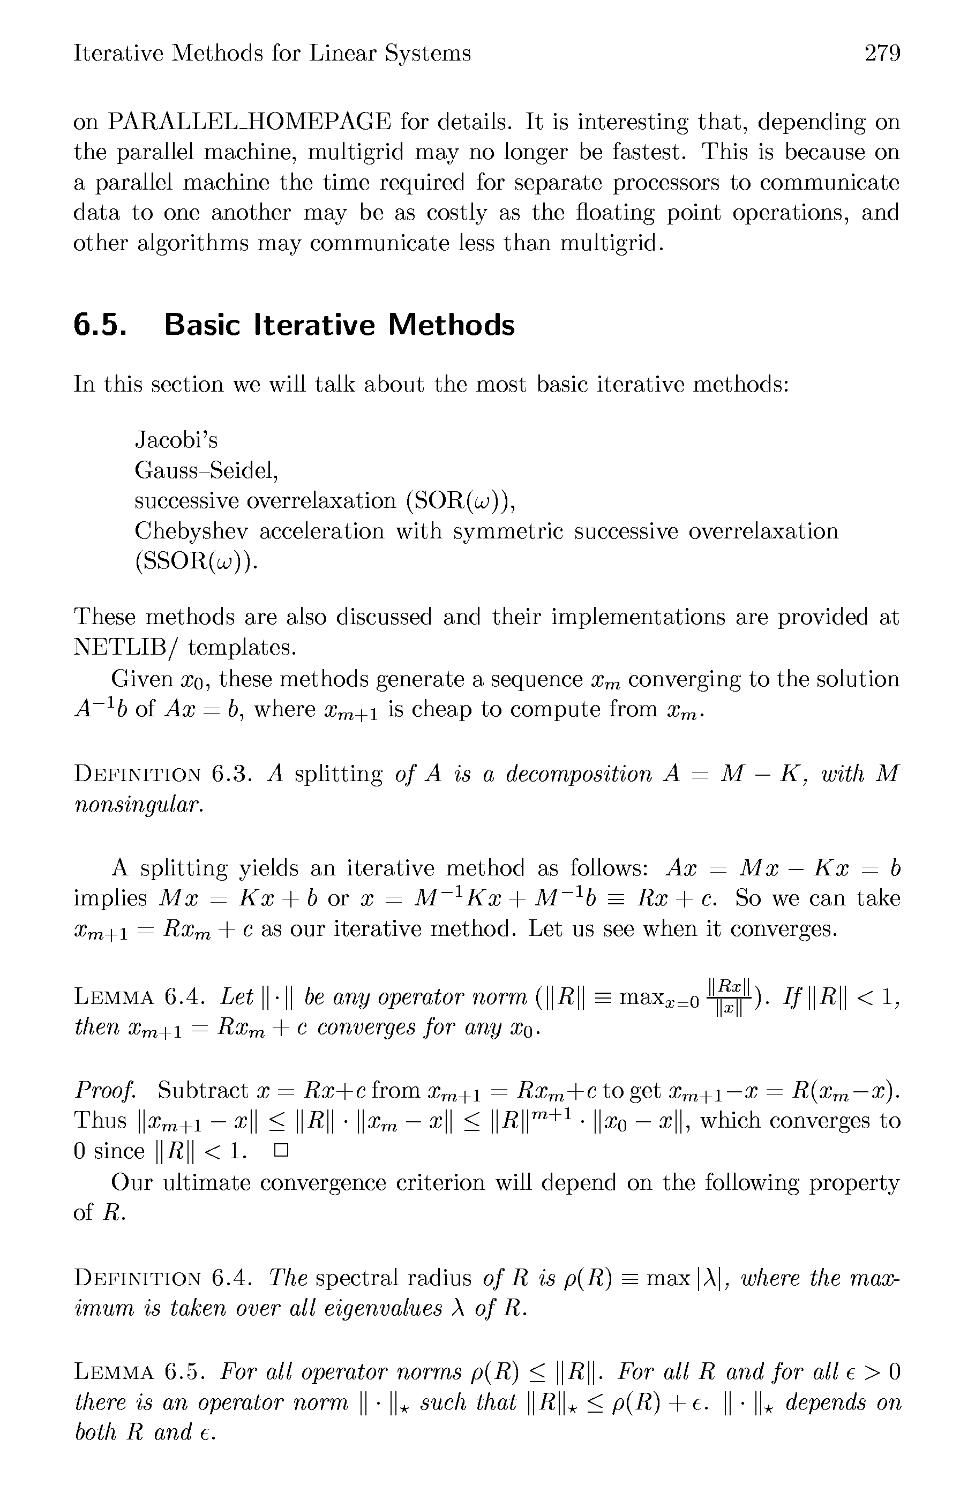 6.5 Basic Iterative Methods